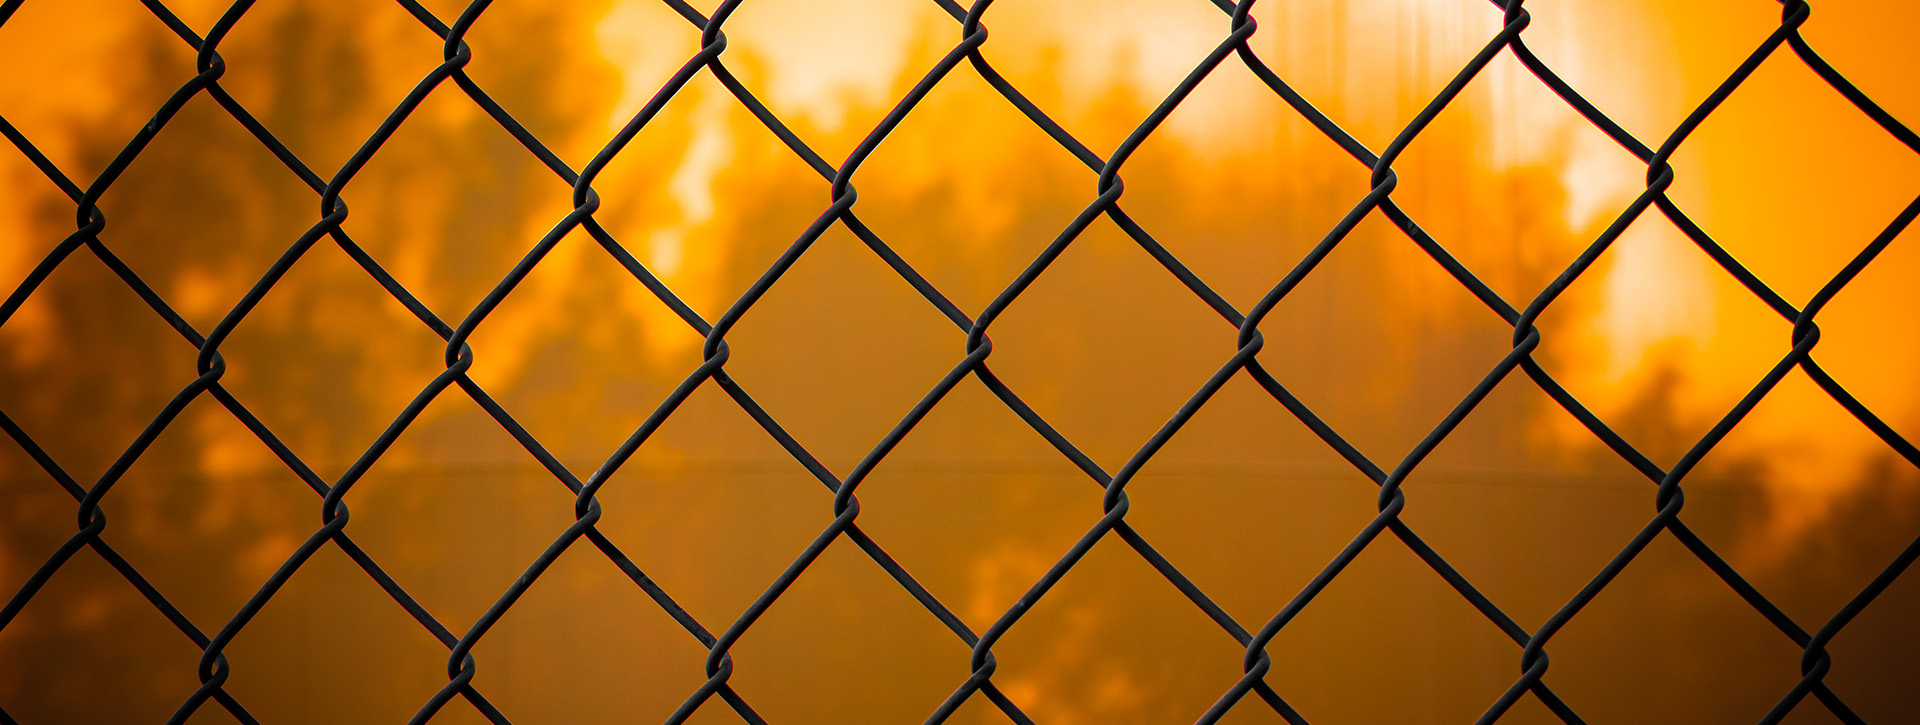 Come realizzare una recinzione: tutorial e consigli